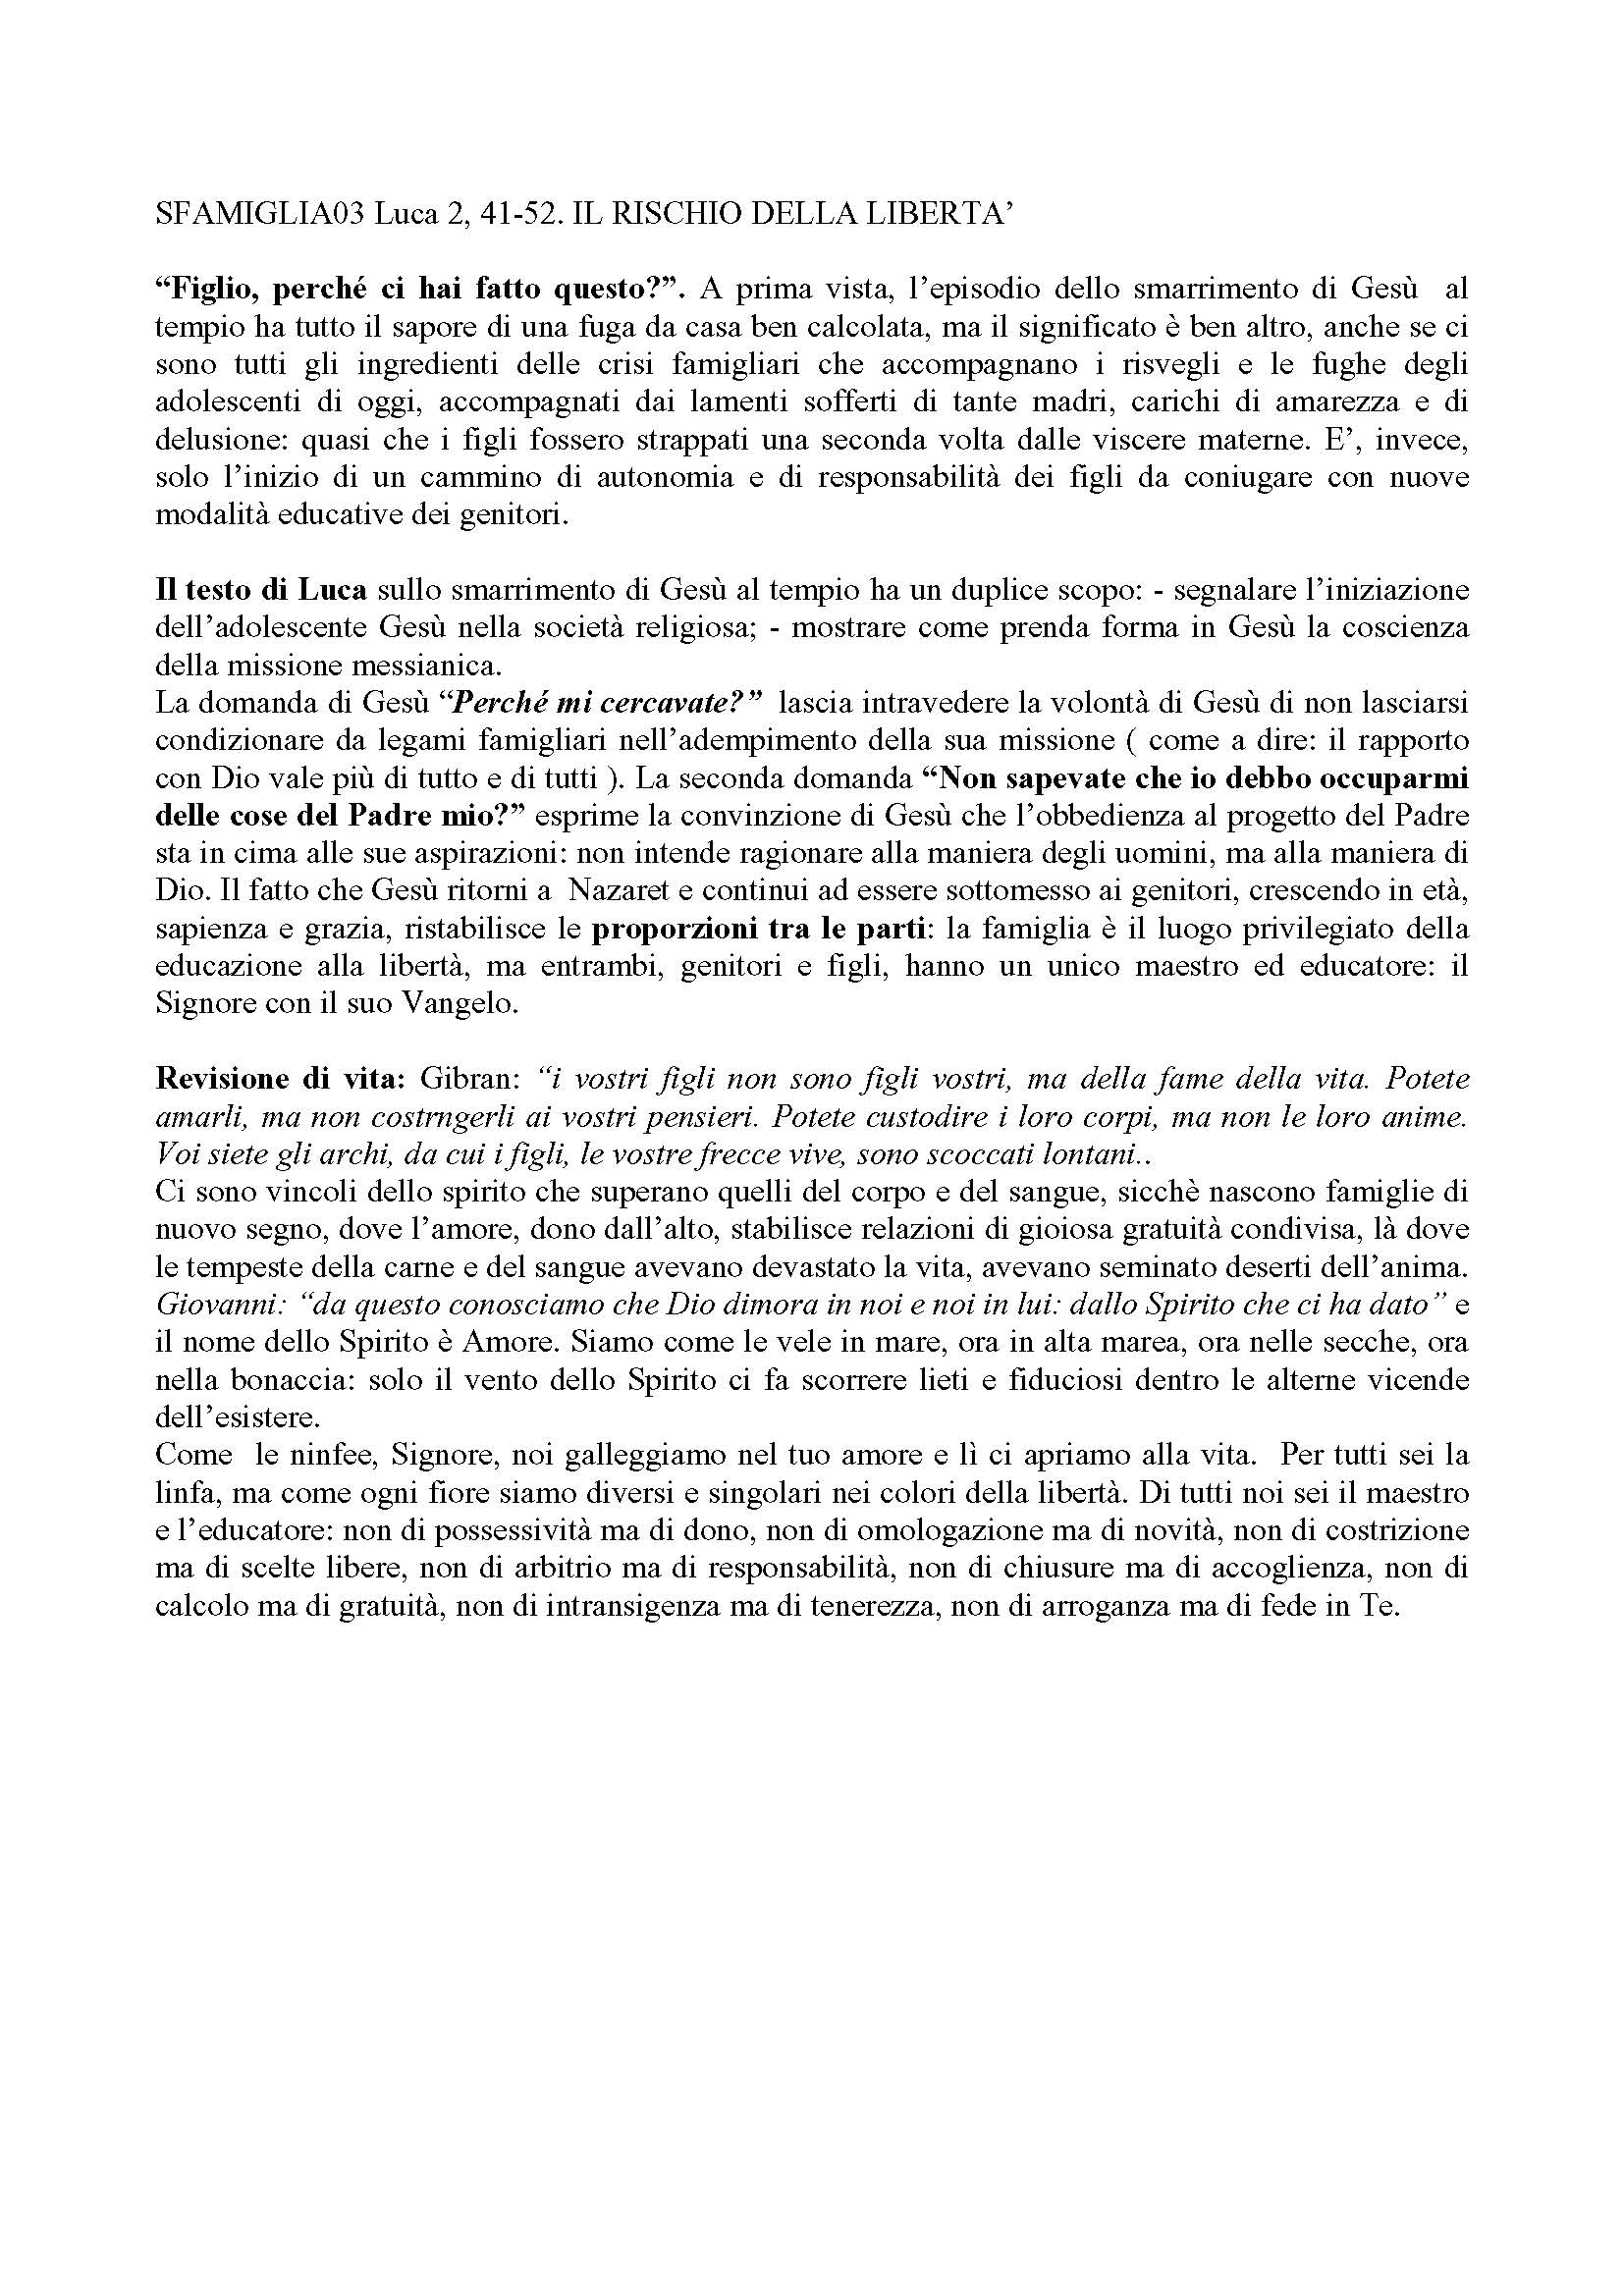 FAMIGLIA03_IL_RISCHIO_DELLA_LIBERTA.pdf